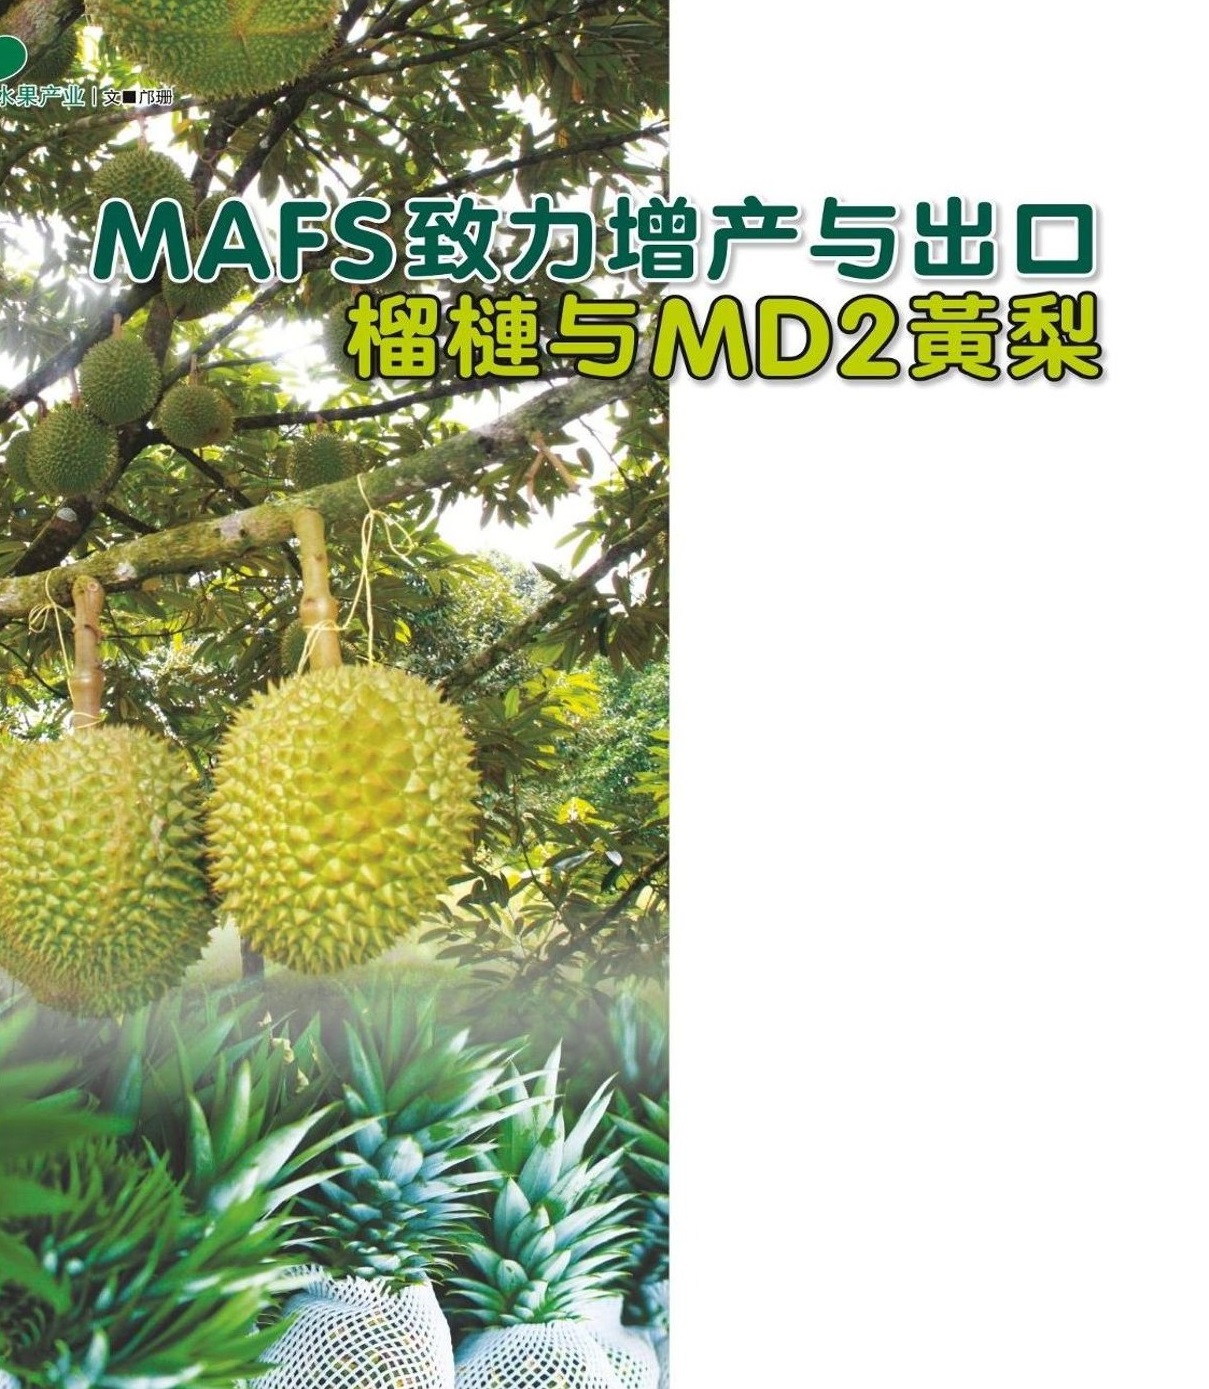 MAFS致力增产与出口 榴梿与MD2黄梨 - 农牧世界